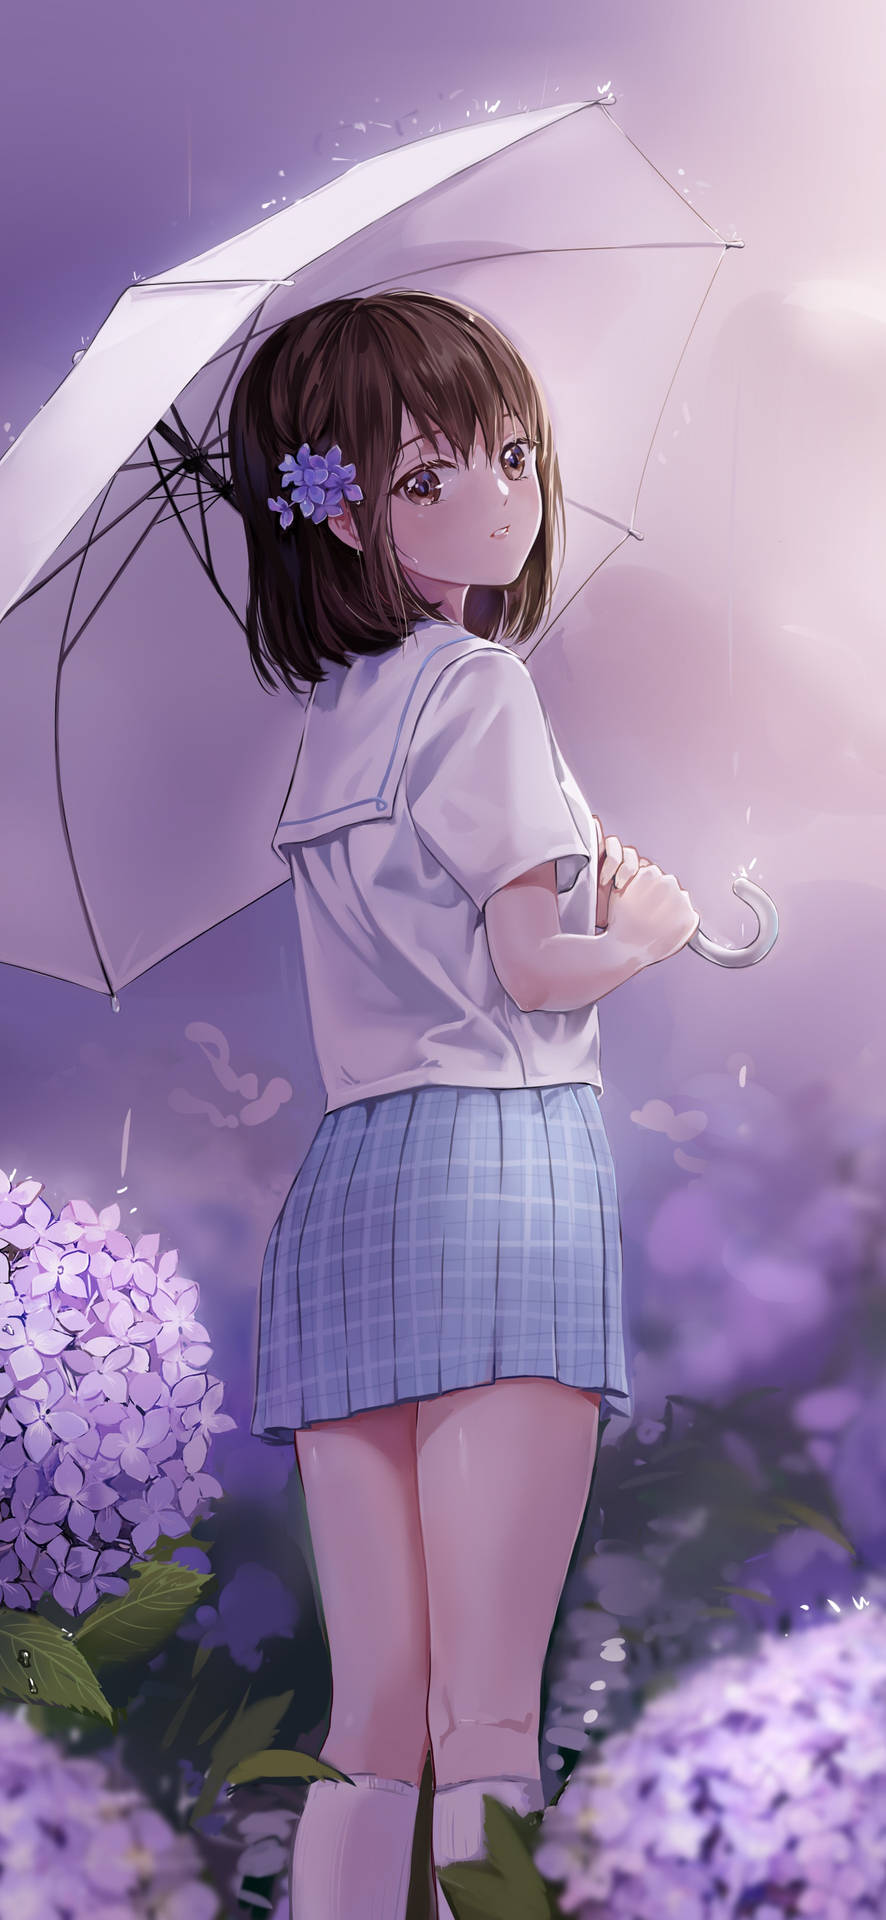 anime girl standing by yugenroenan on DeviantArt